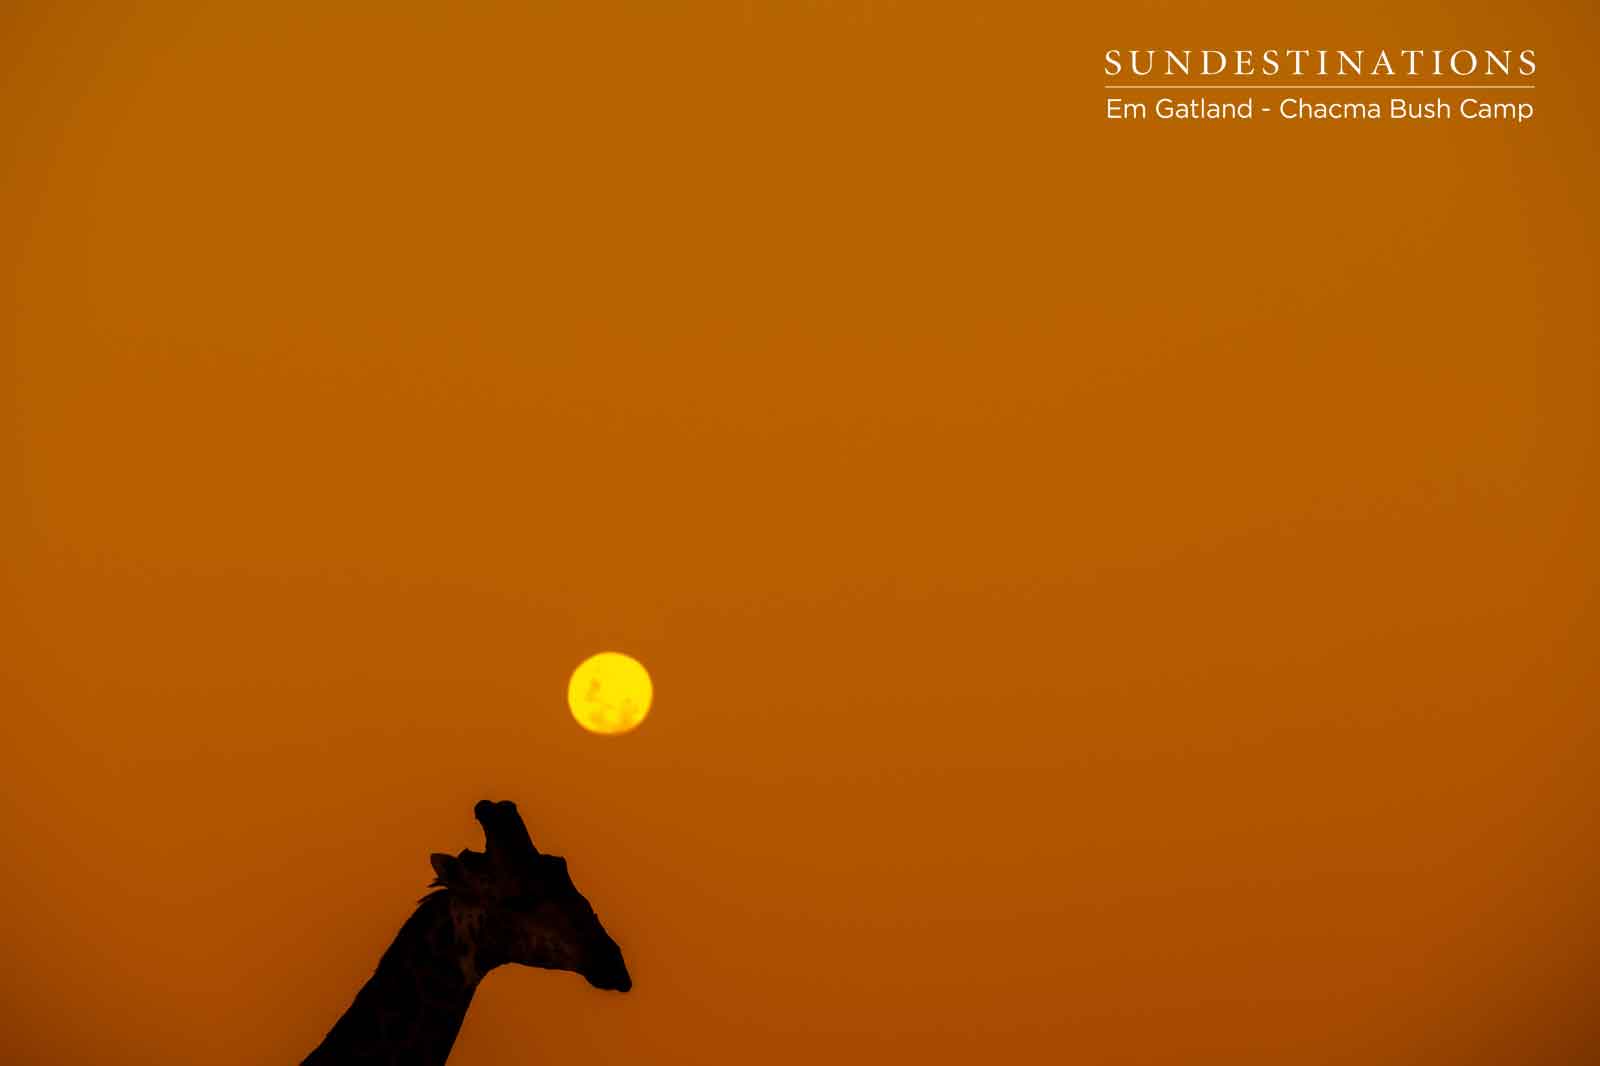 Sunsets and Giraffe at Chacma Bush Camp